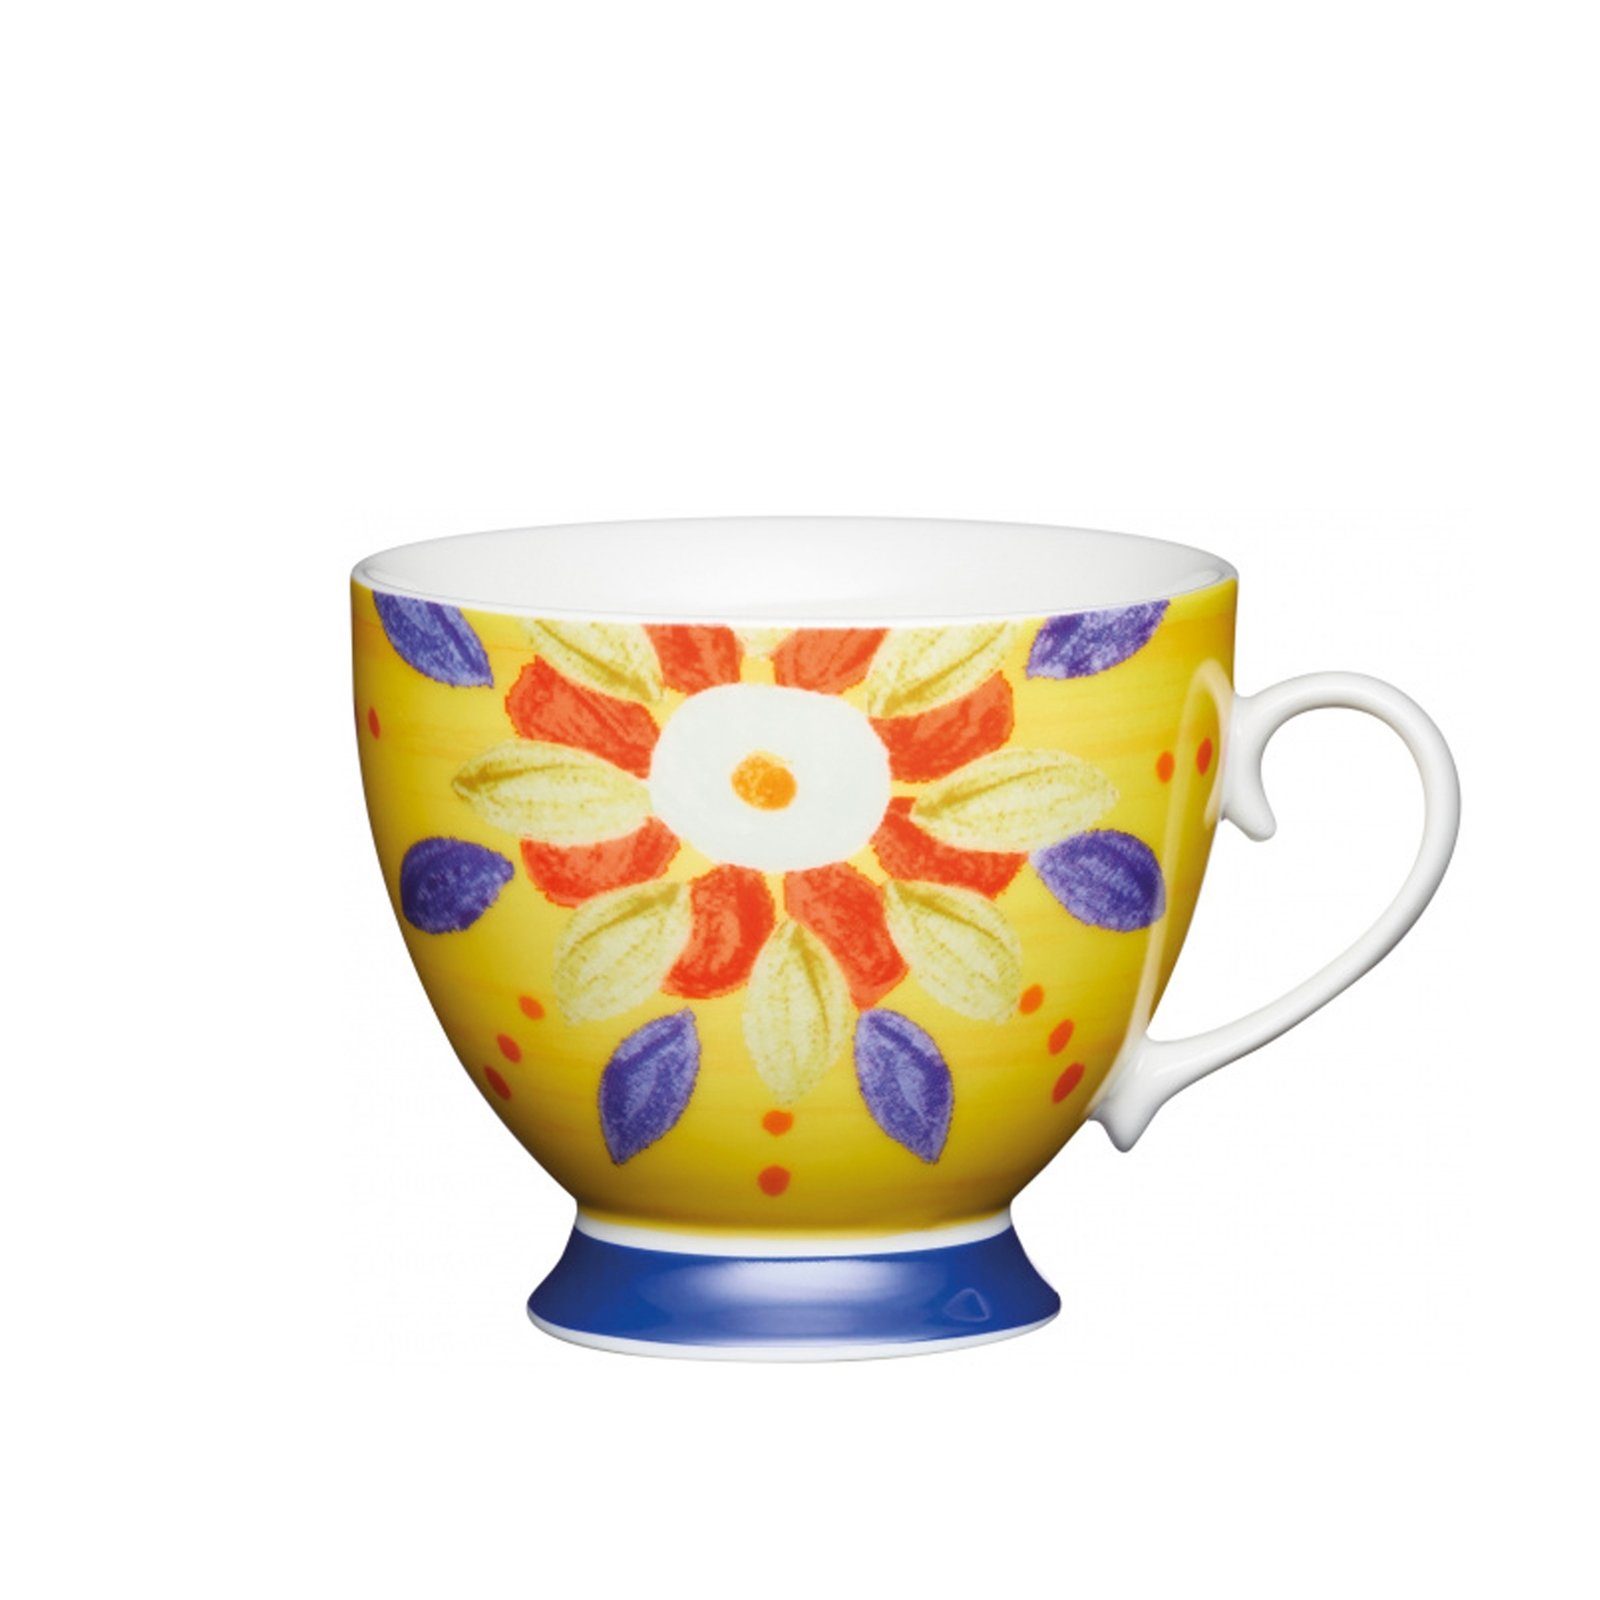 Neuetischkultur Marokko geschwungene Tasse Porzellan Form, Gelb 4-teilig, Tassen-Set,